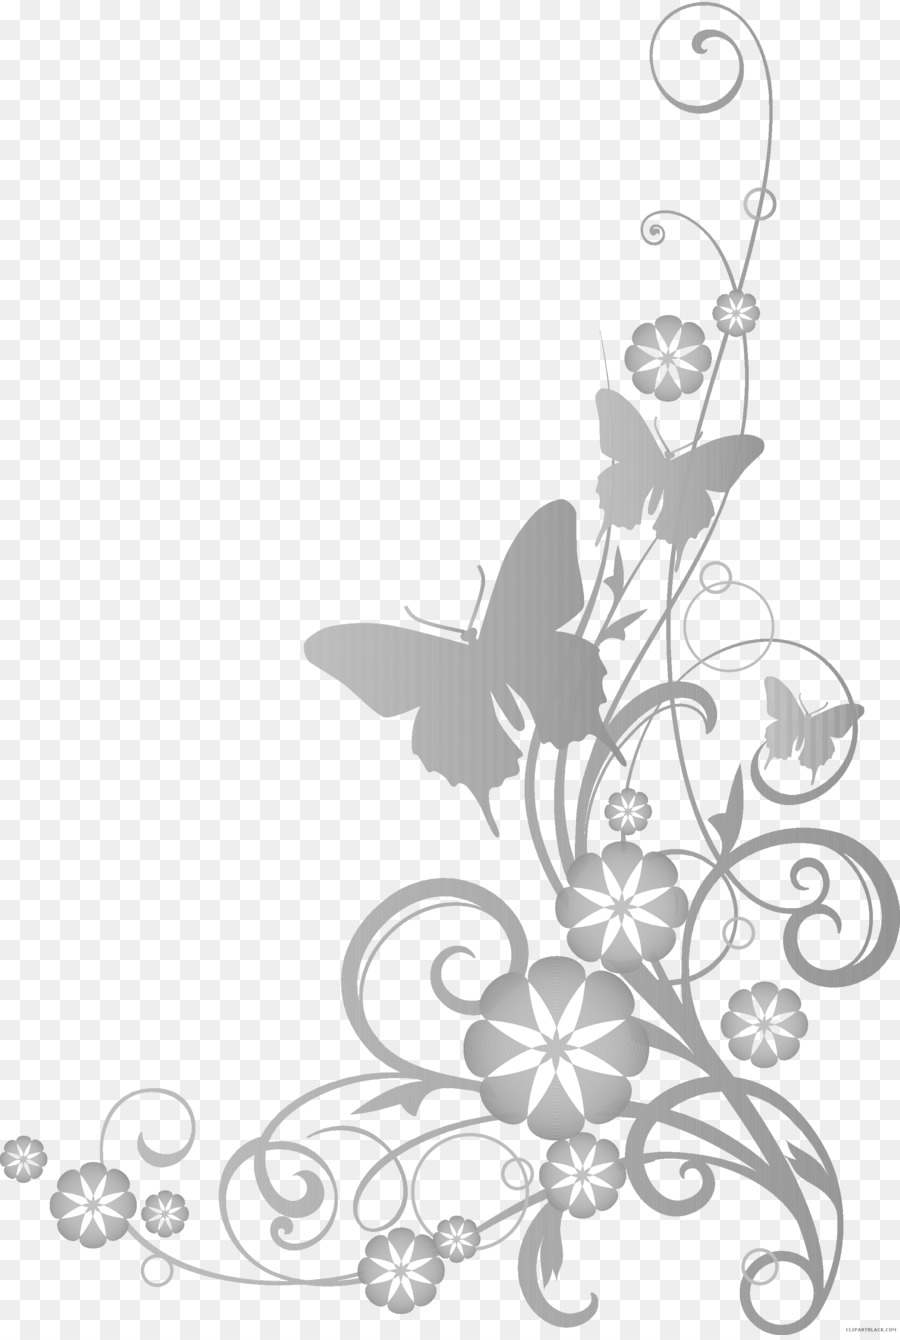 Die Clip-art Bild Zeichnen Blume Desktop Wallpaper - blume